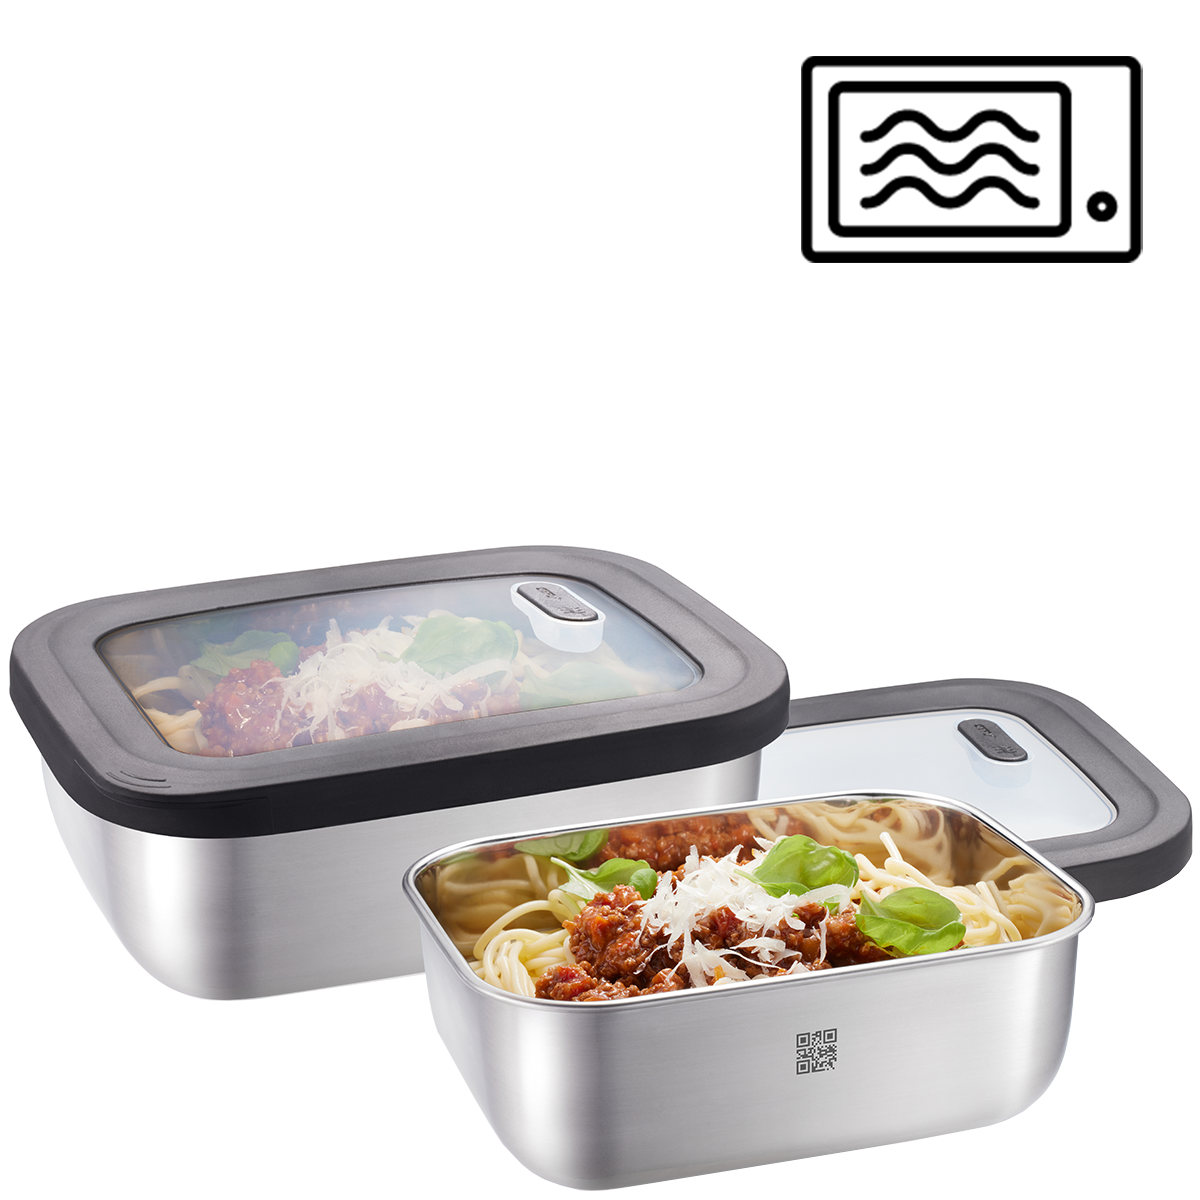 Food storage container set PROVIDO, 2 pieces, rectangular (Freshness control and stock checks via app)